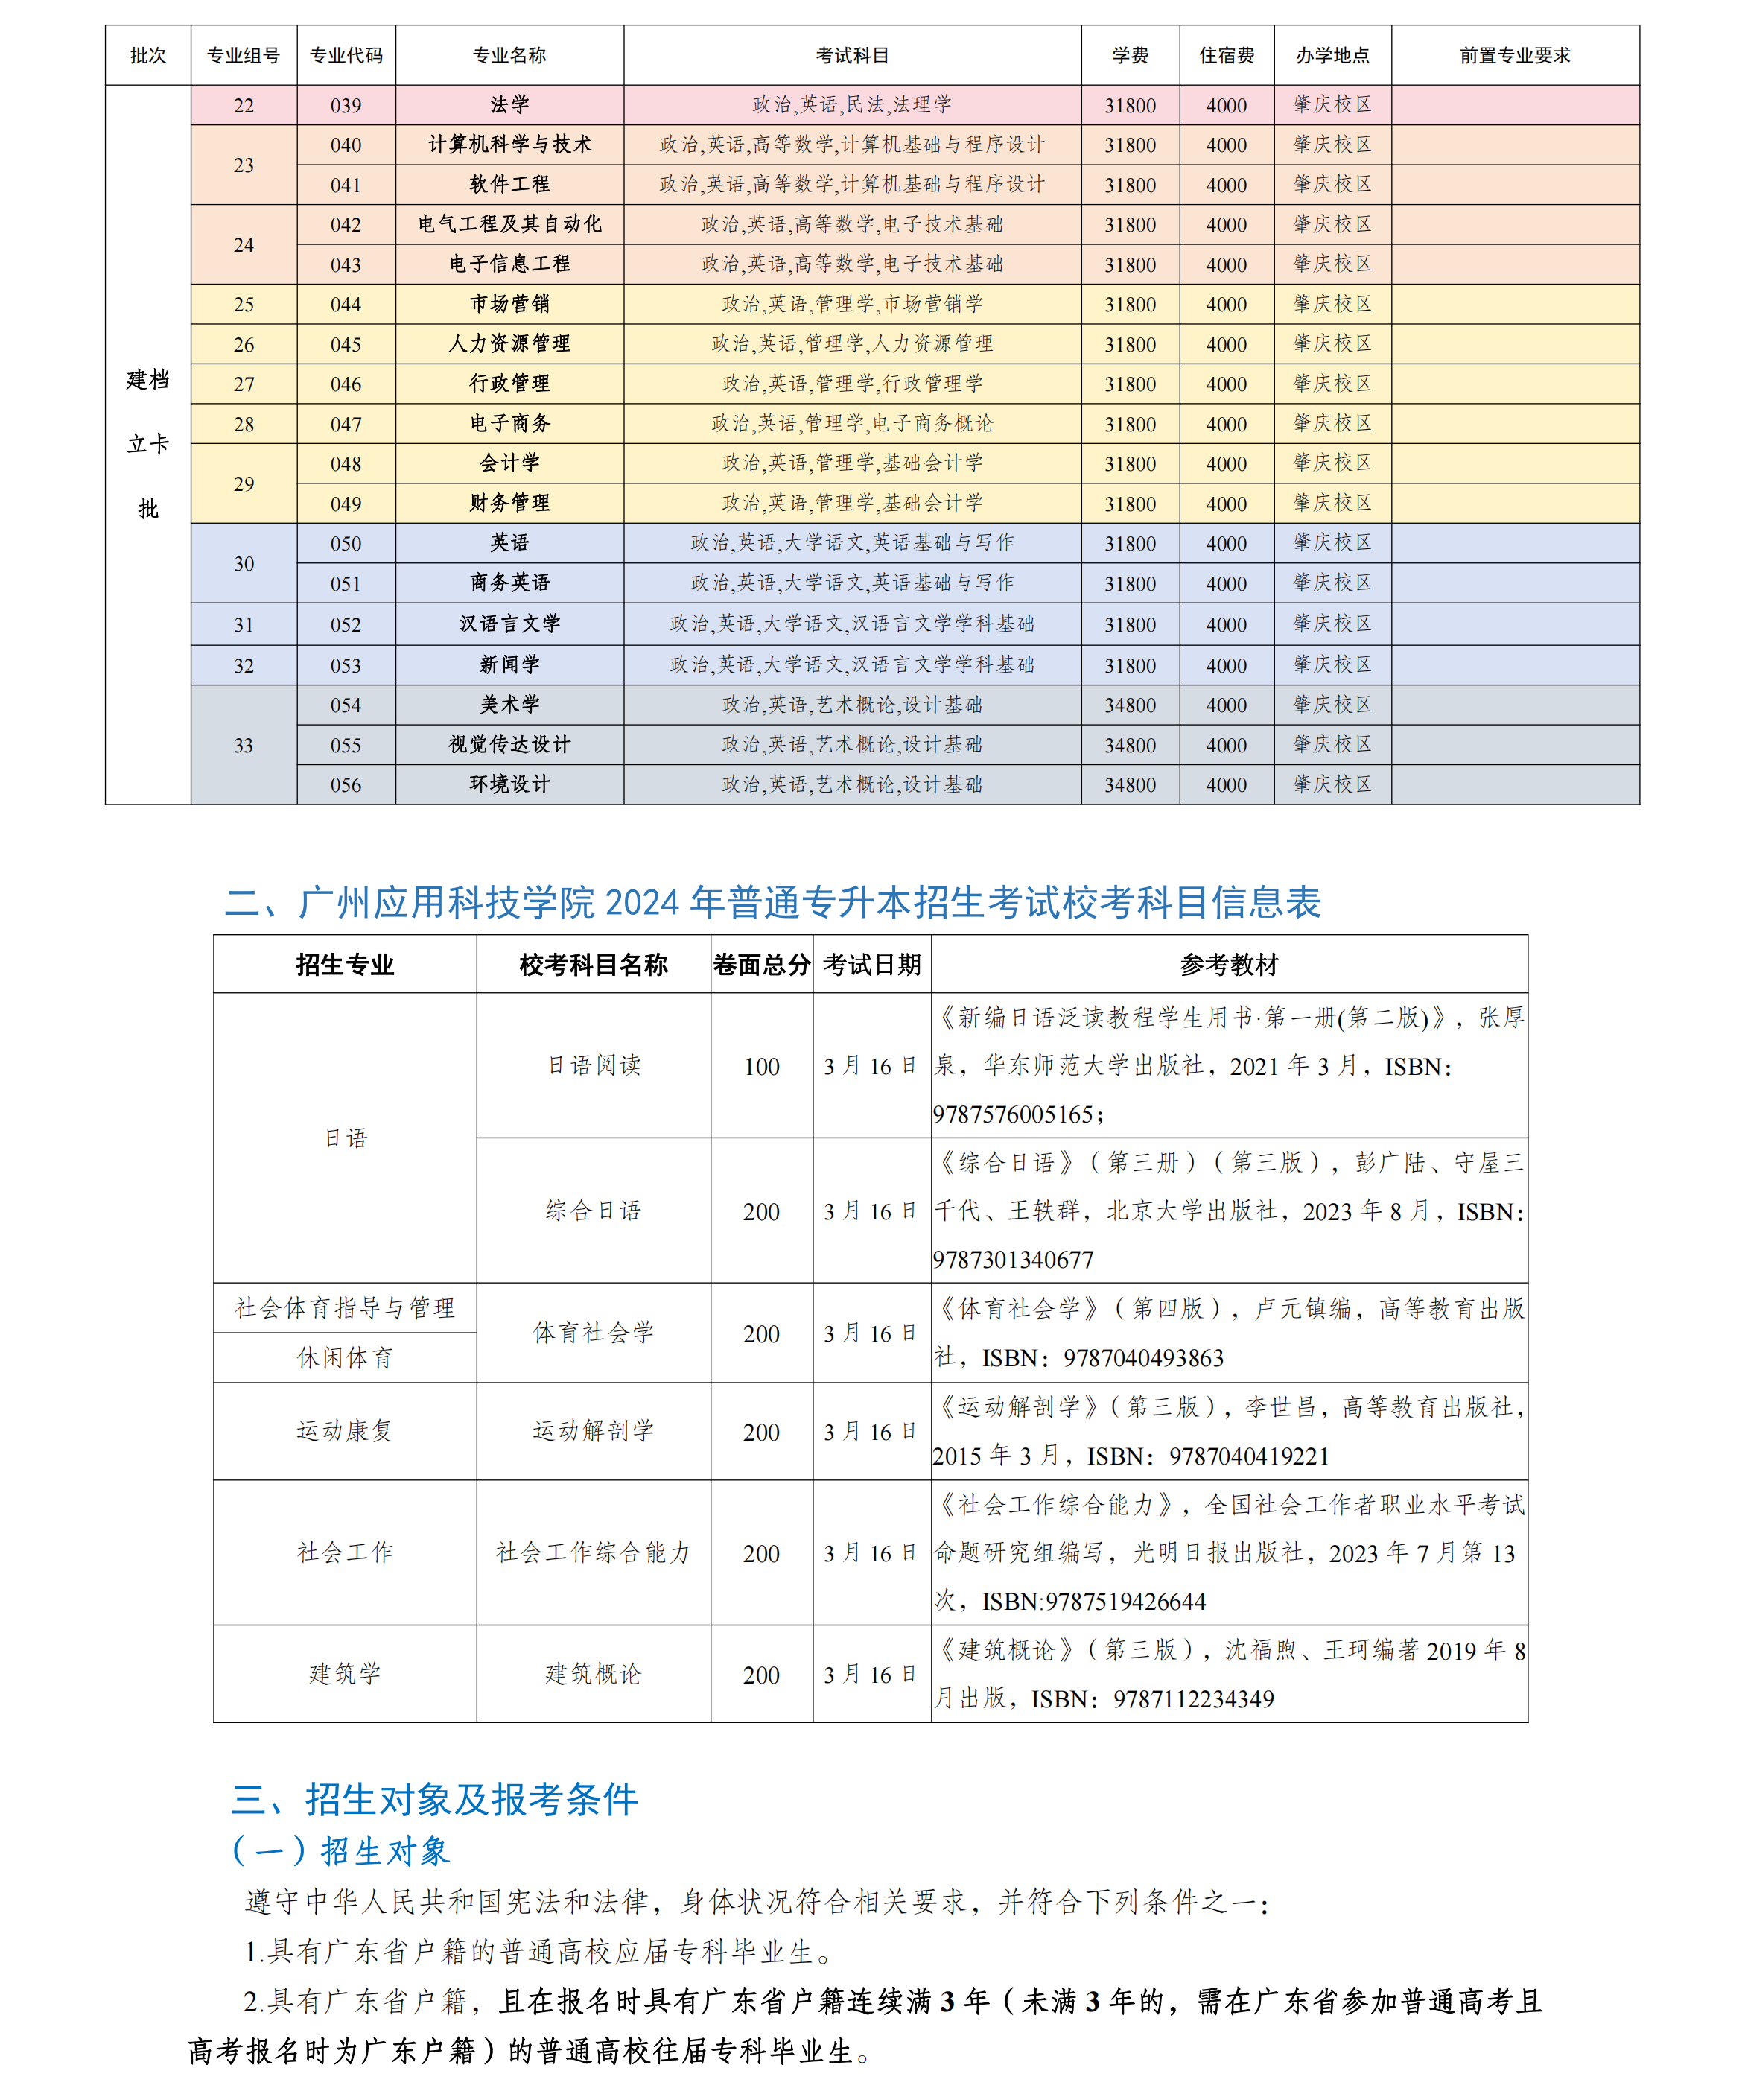 广州应用科技学院 2024 年普通专升本招生简章